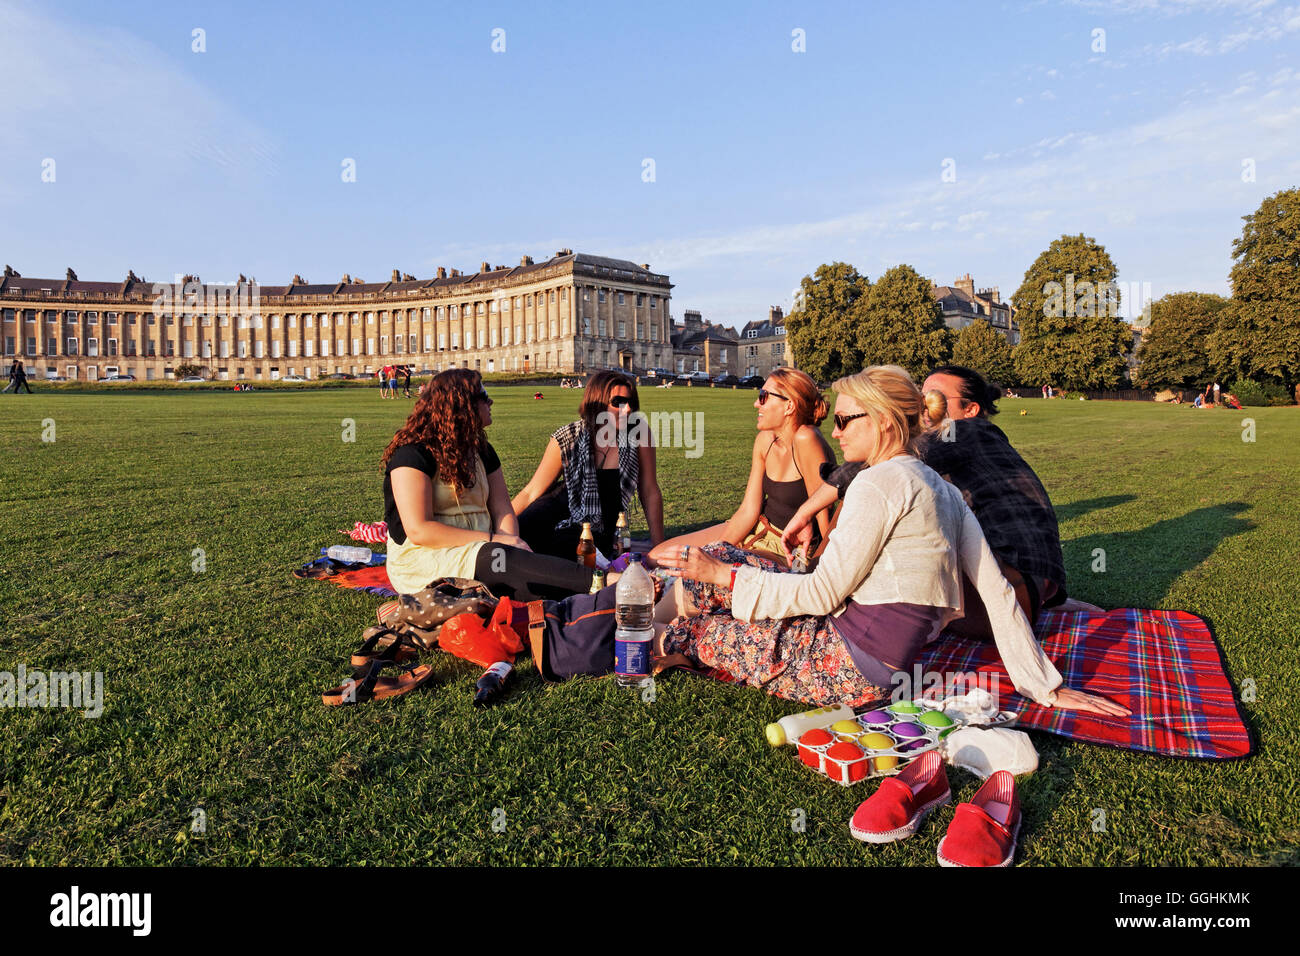 Picknick auf dem Rasen im Royal Crescent, Bath, Somerset, England, Großbritannien Stockfoto